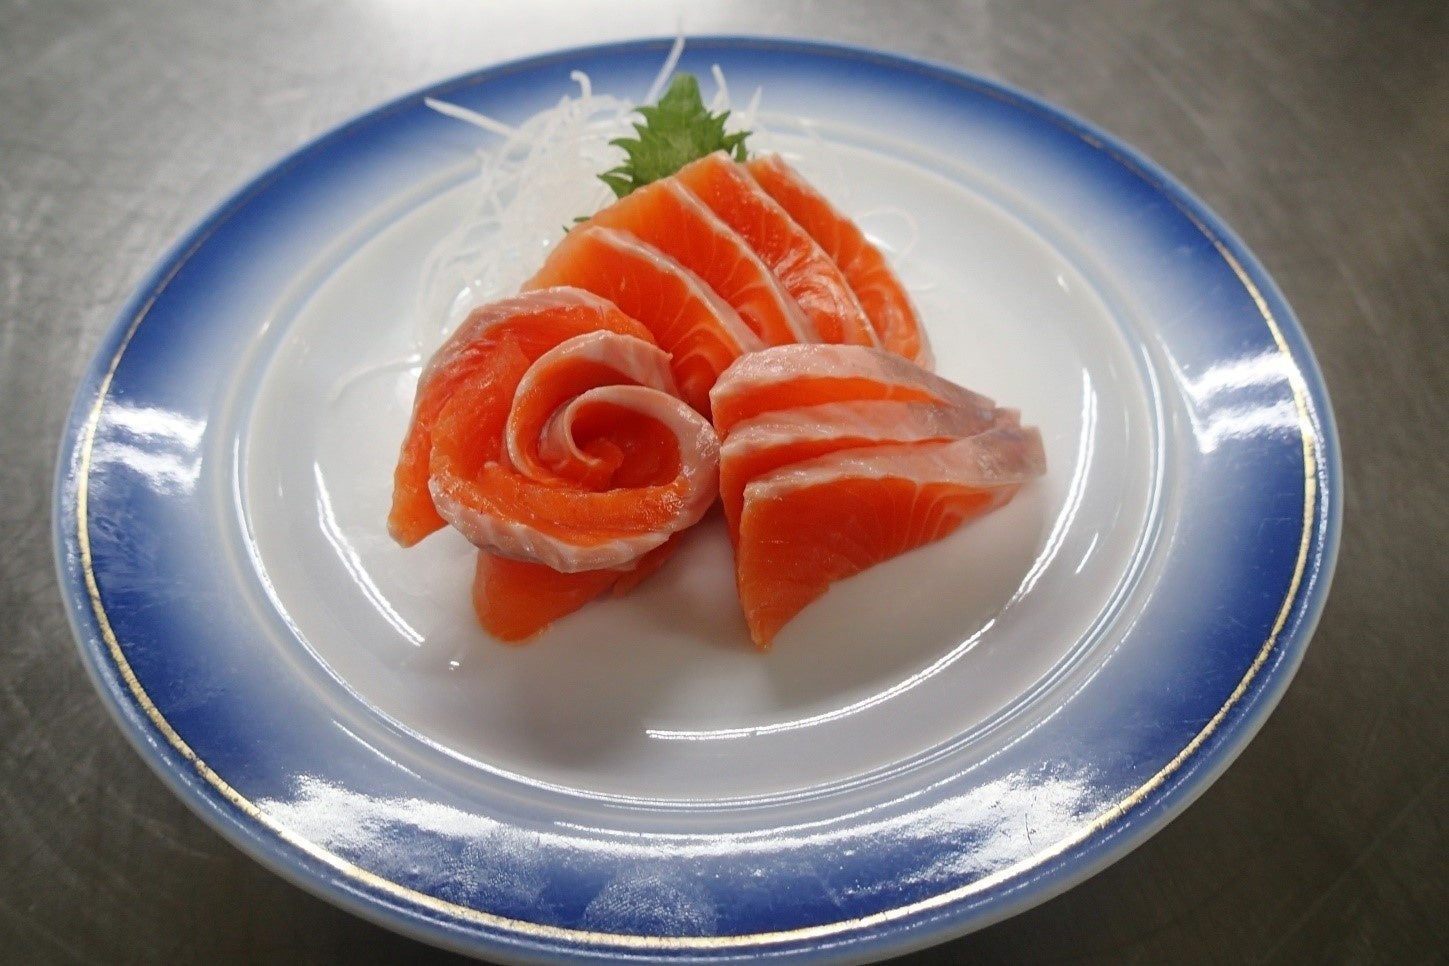 生で食べられる魚で、刺身として人気が高く、また、いろいろな料理にアレンジして多彩な味を楽しむことができるのも特徴です